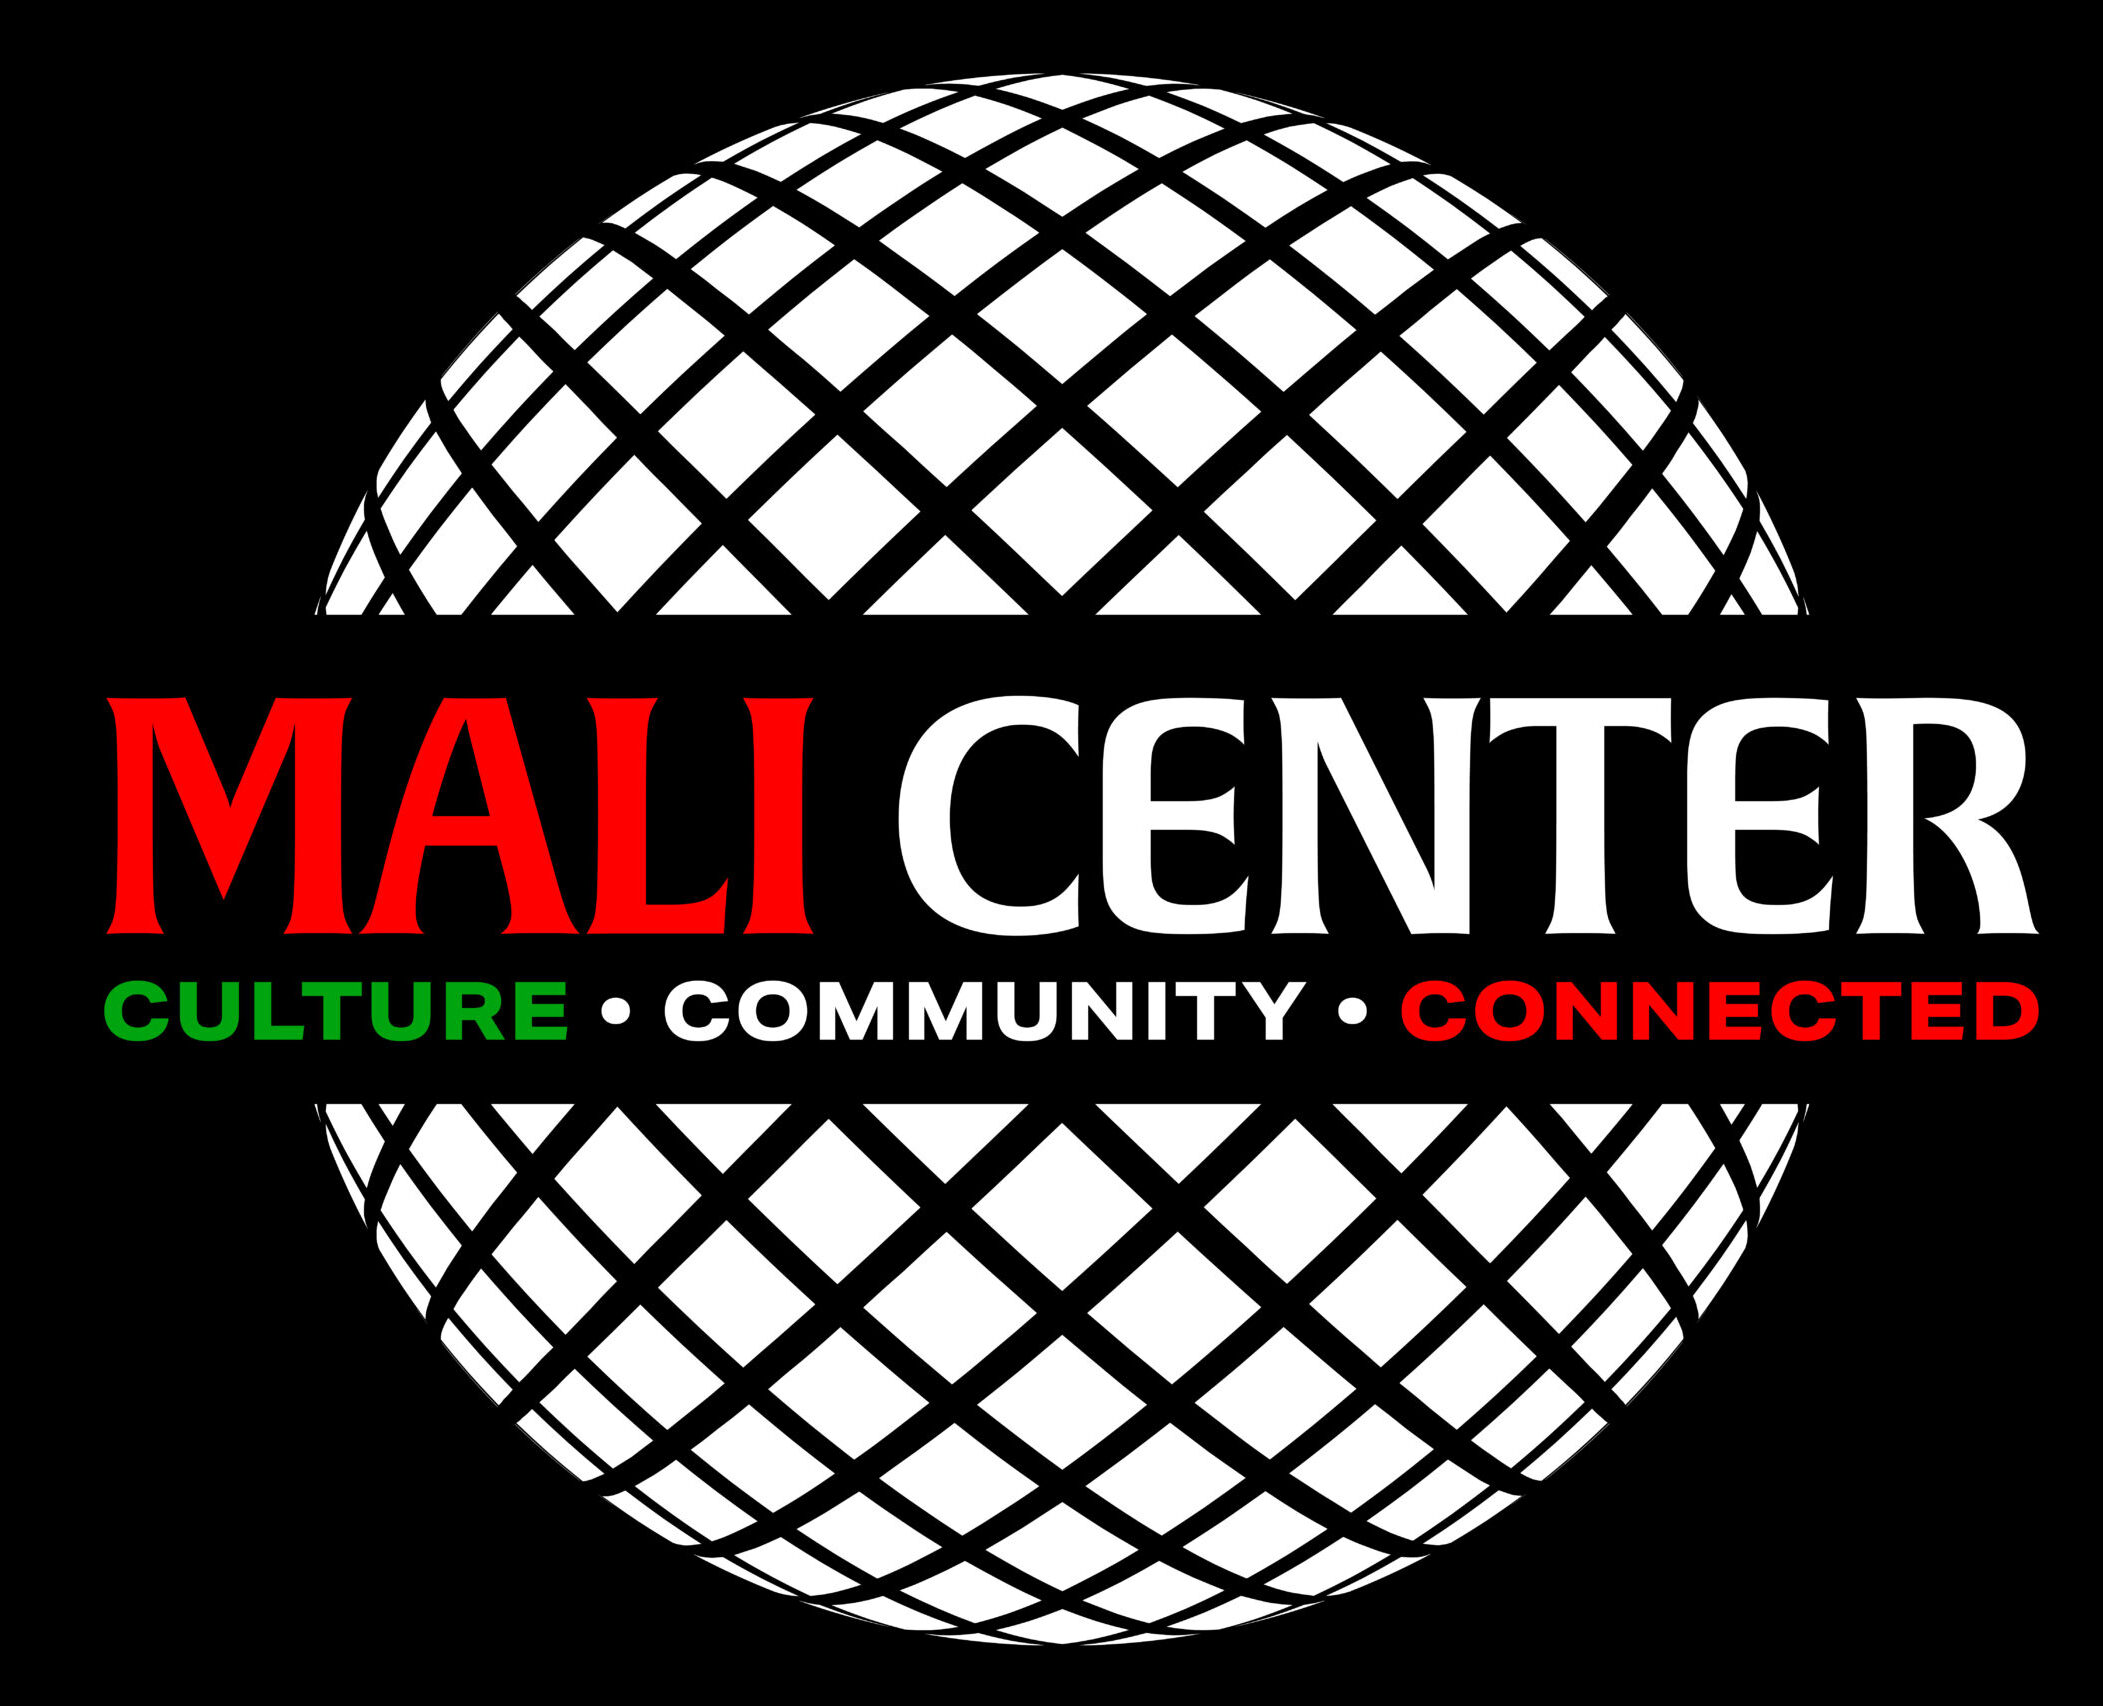 The Mali Center